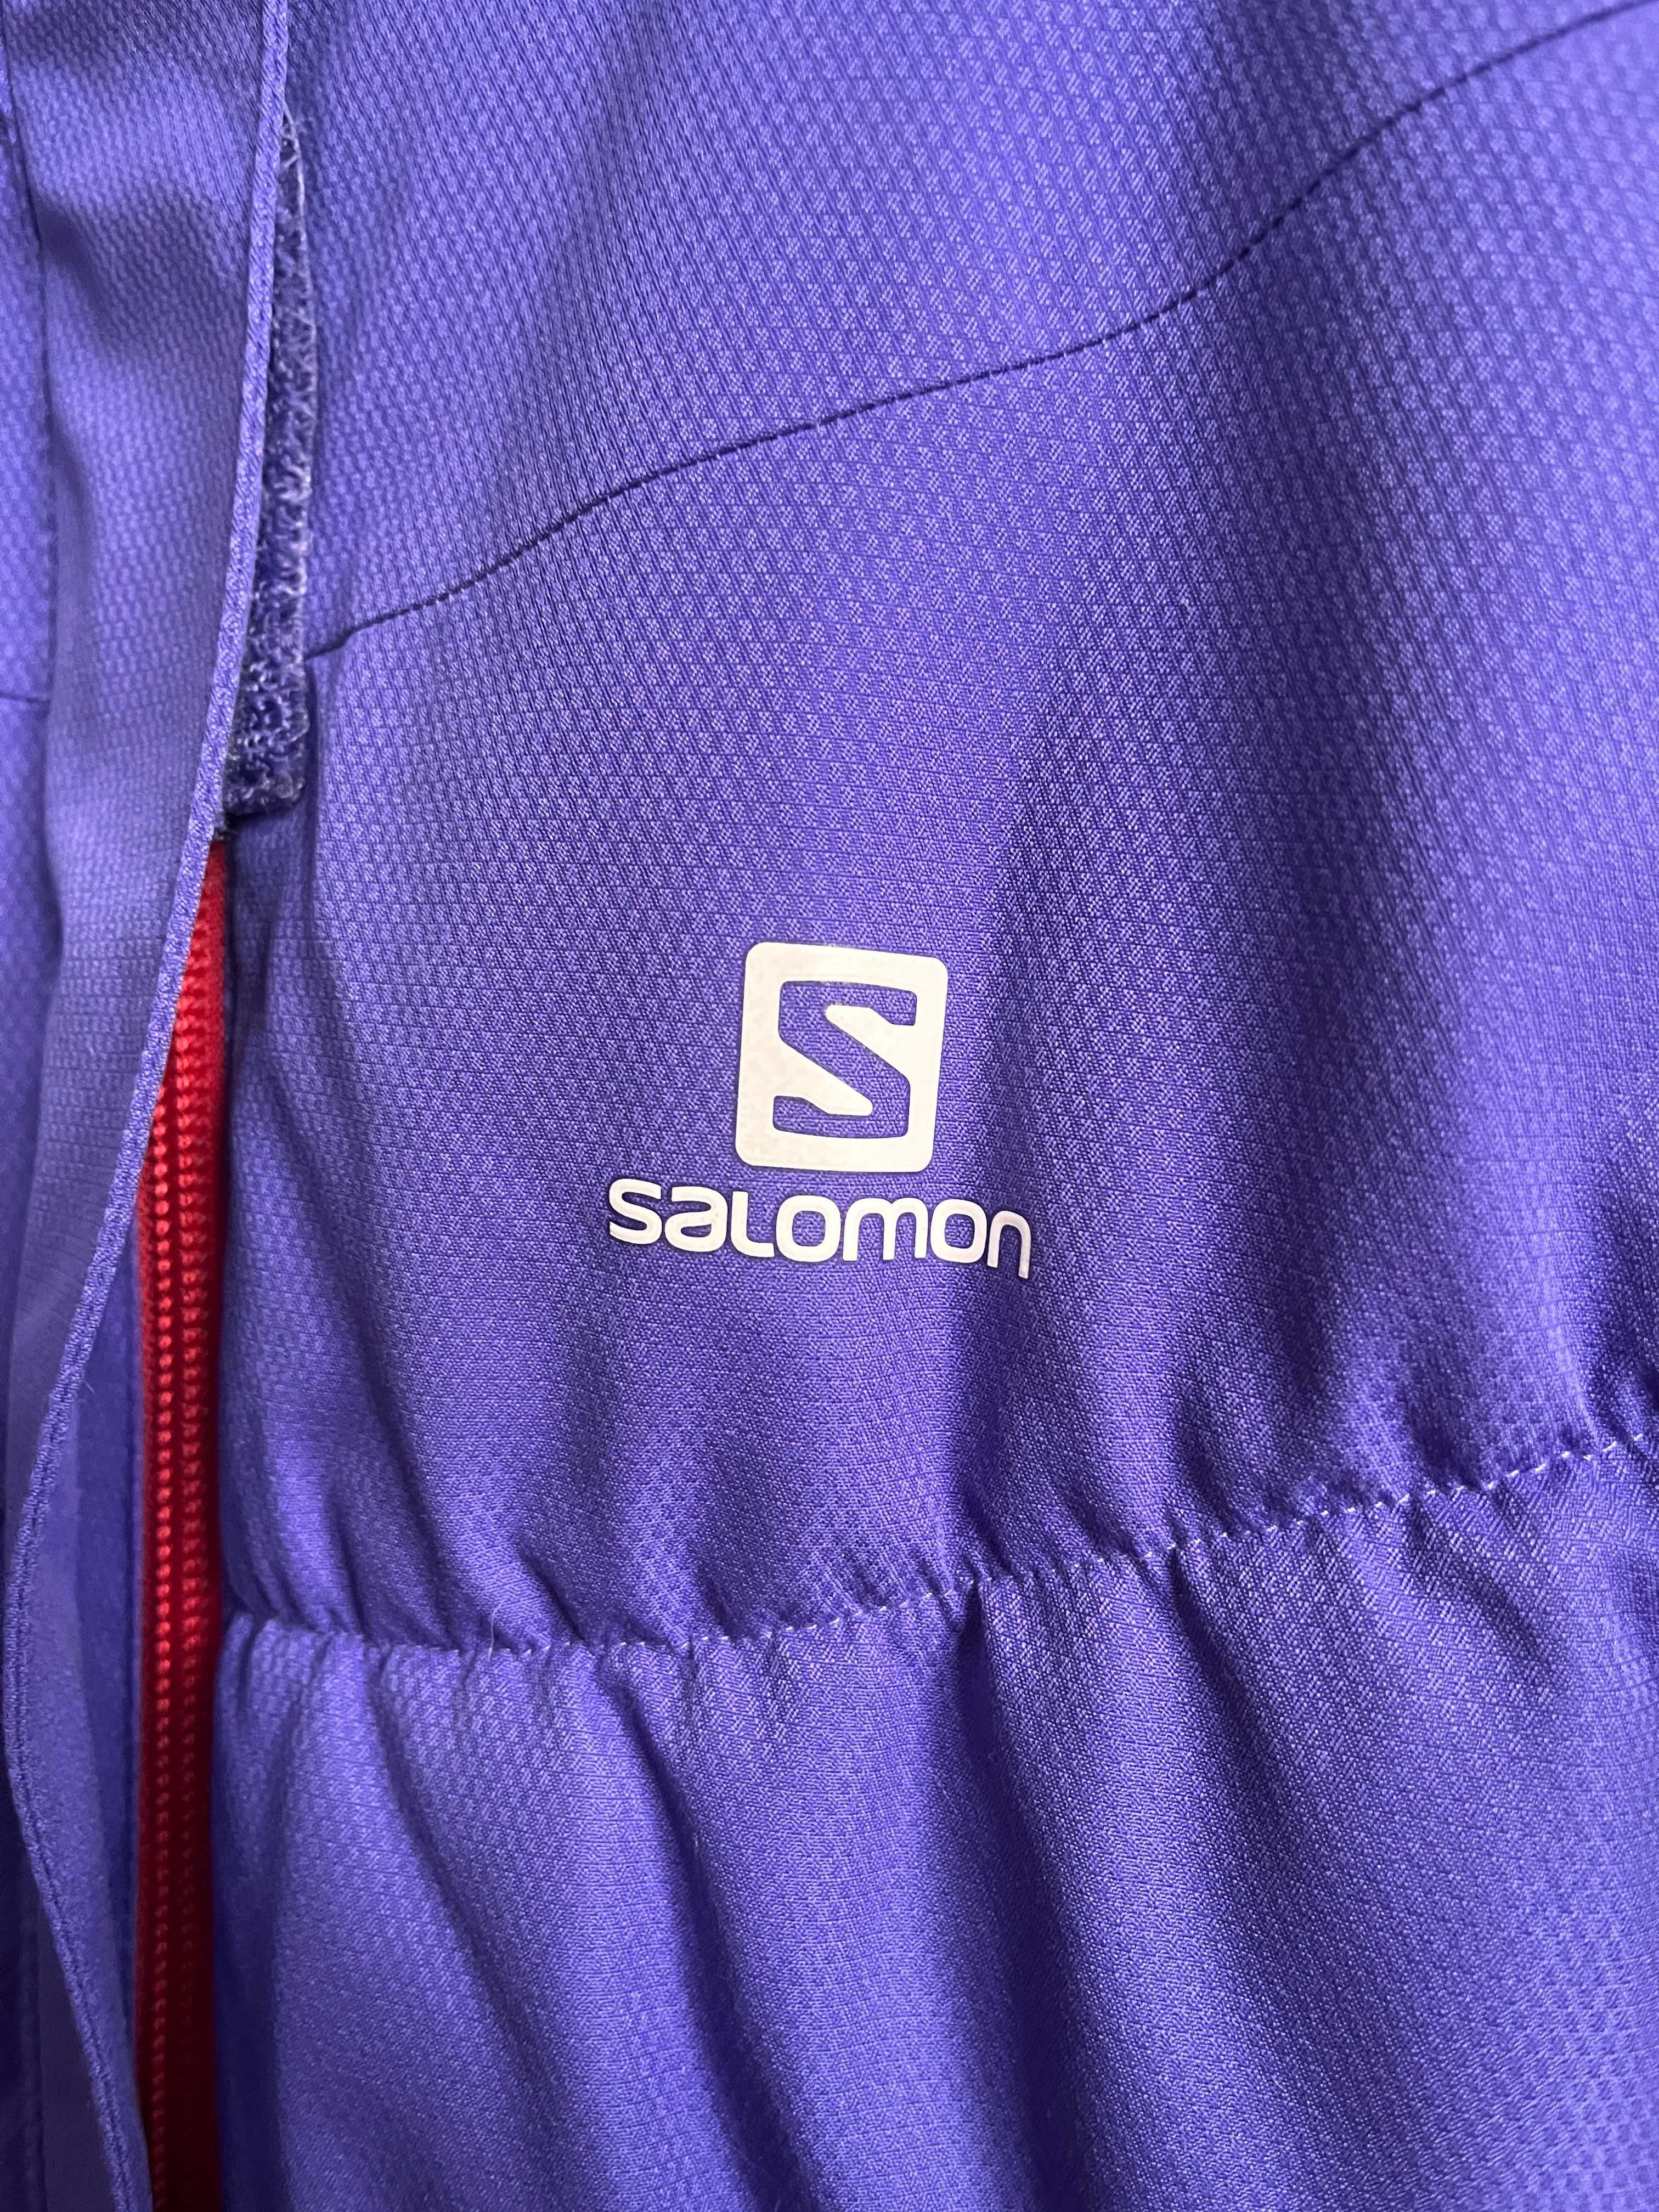 Damska zimowa kurtka puchowa Salomon AdvancedSkin Dry - rozmiar M